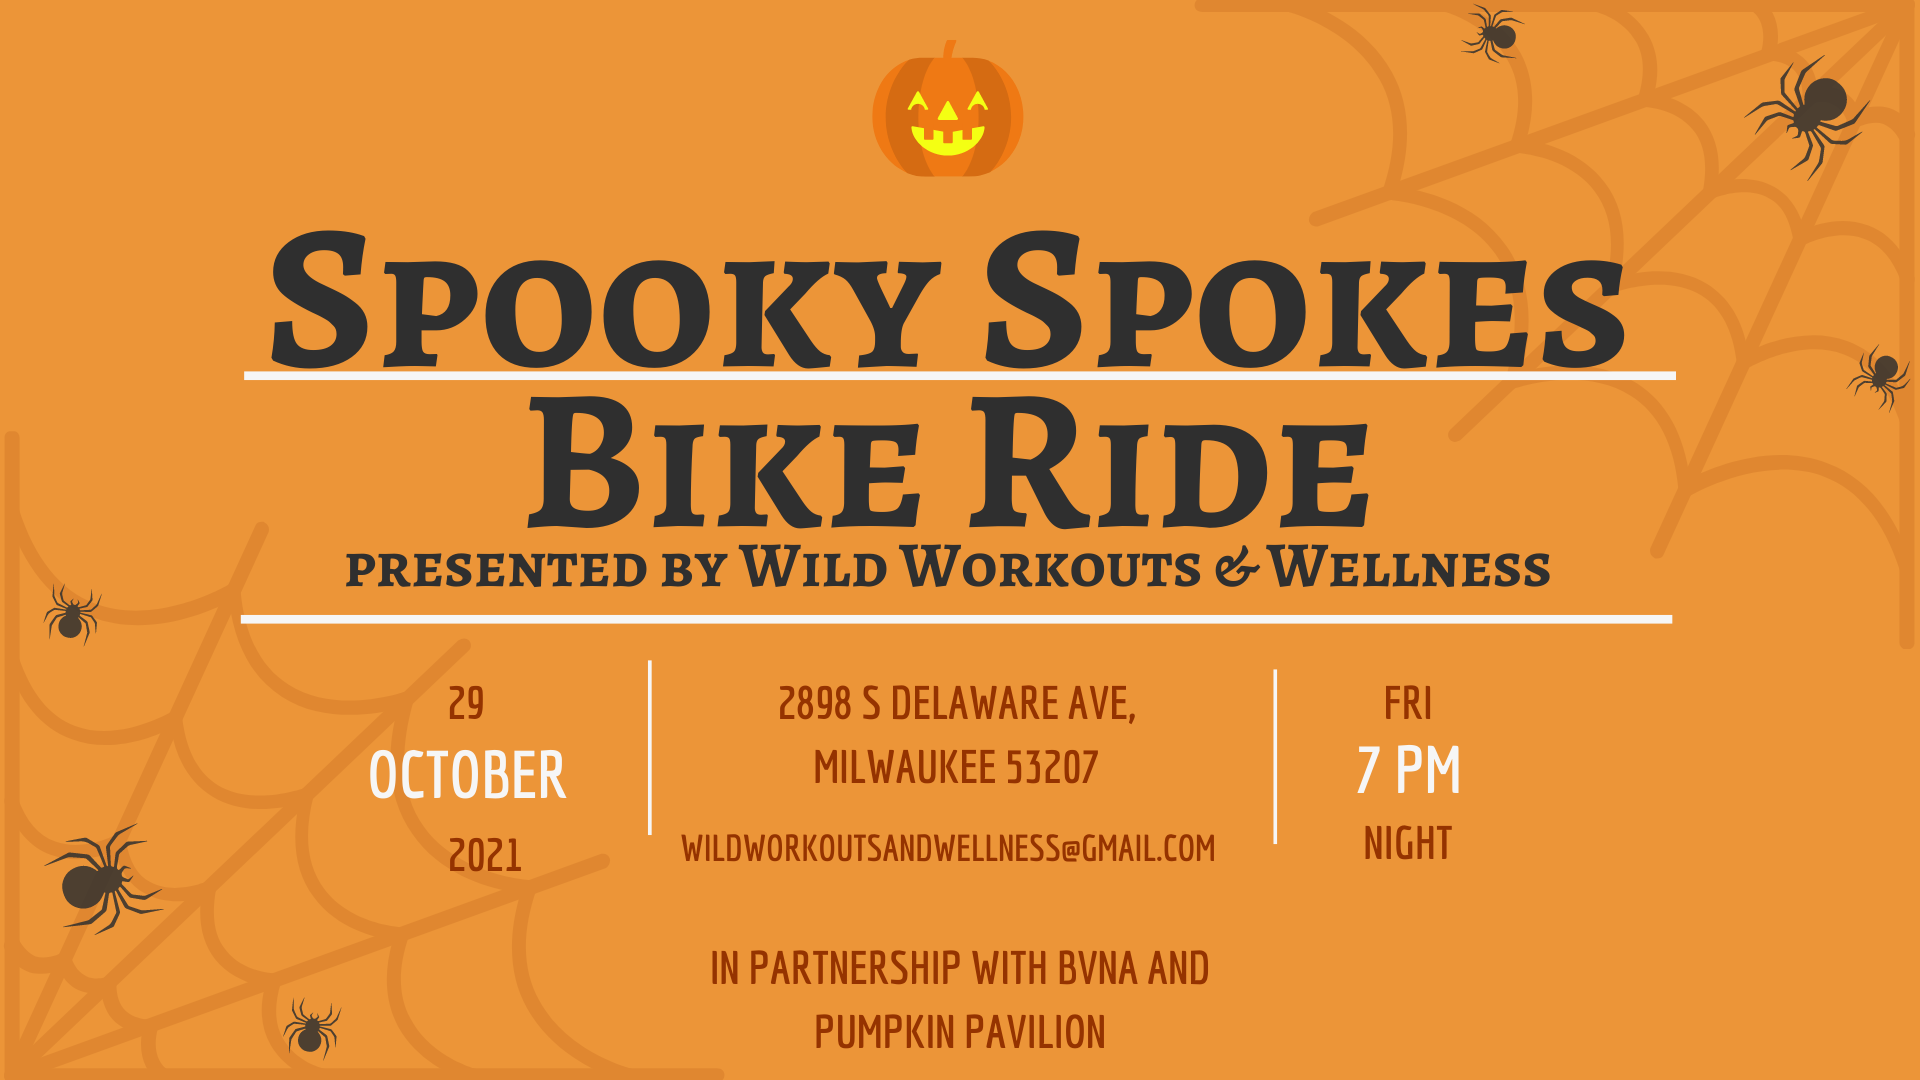 Spooky Spokes Bike Ride Event flier